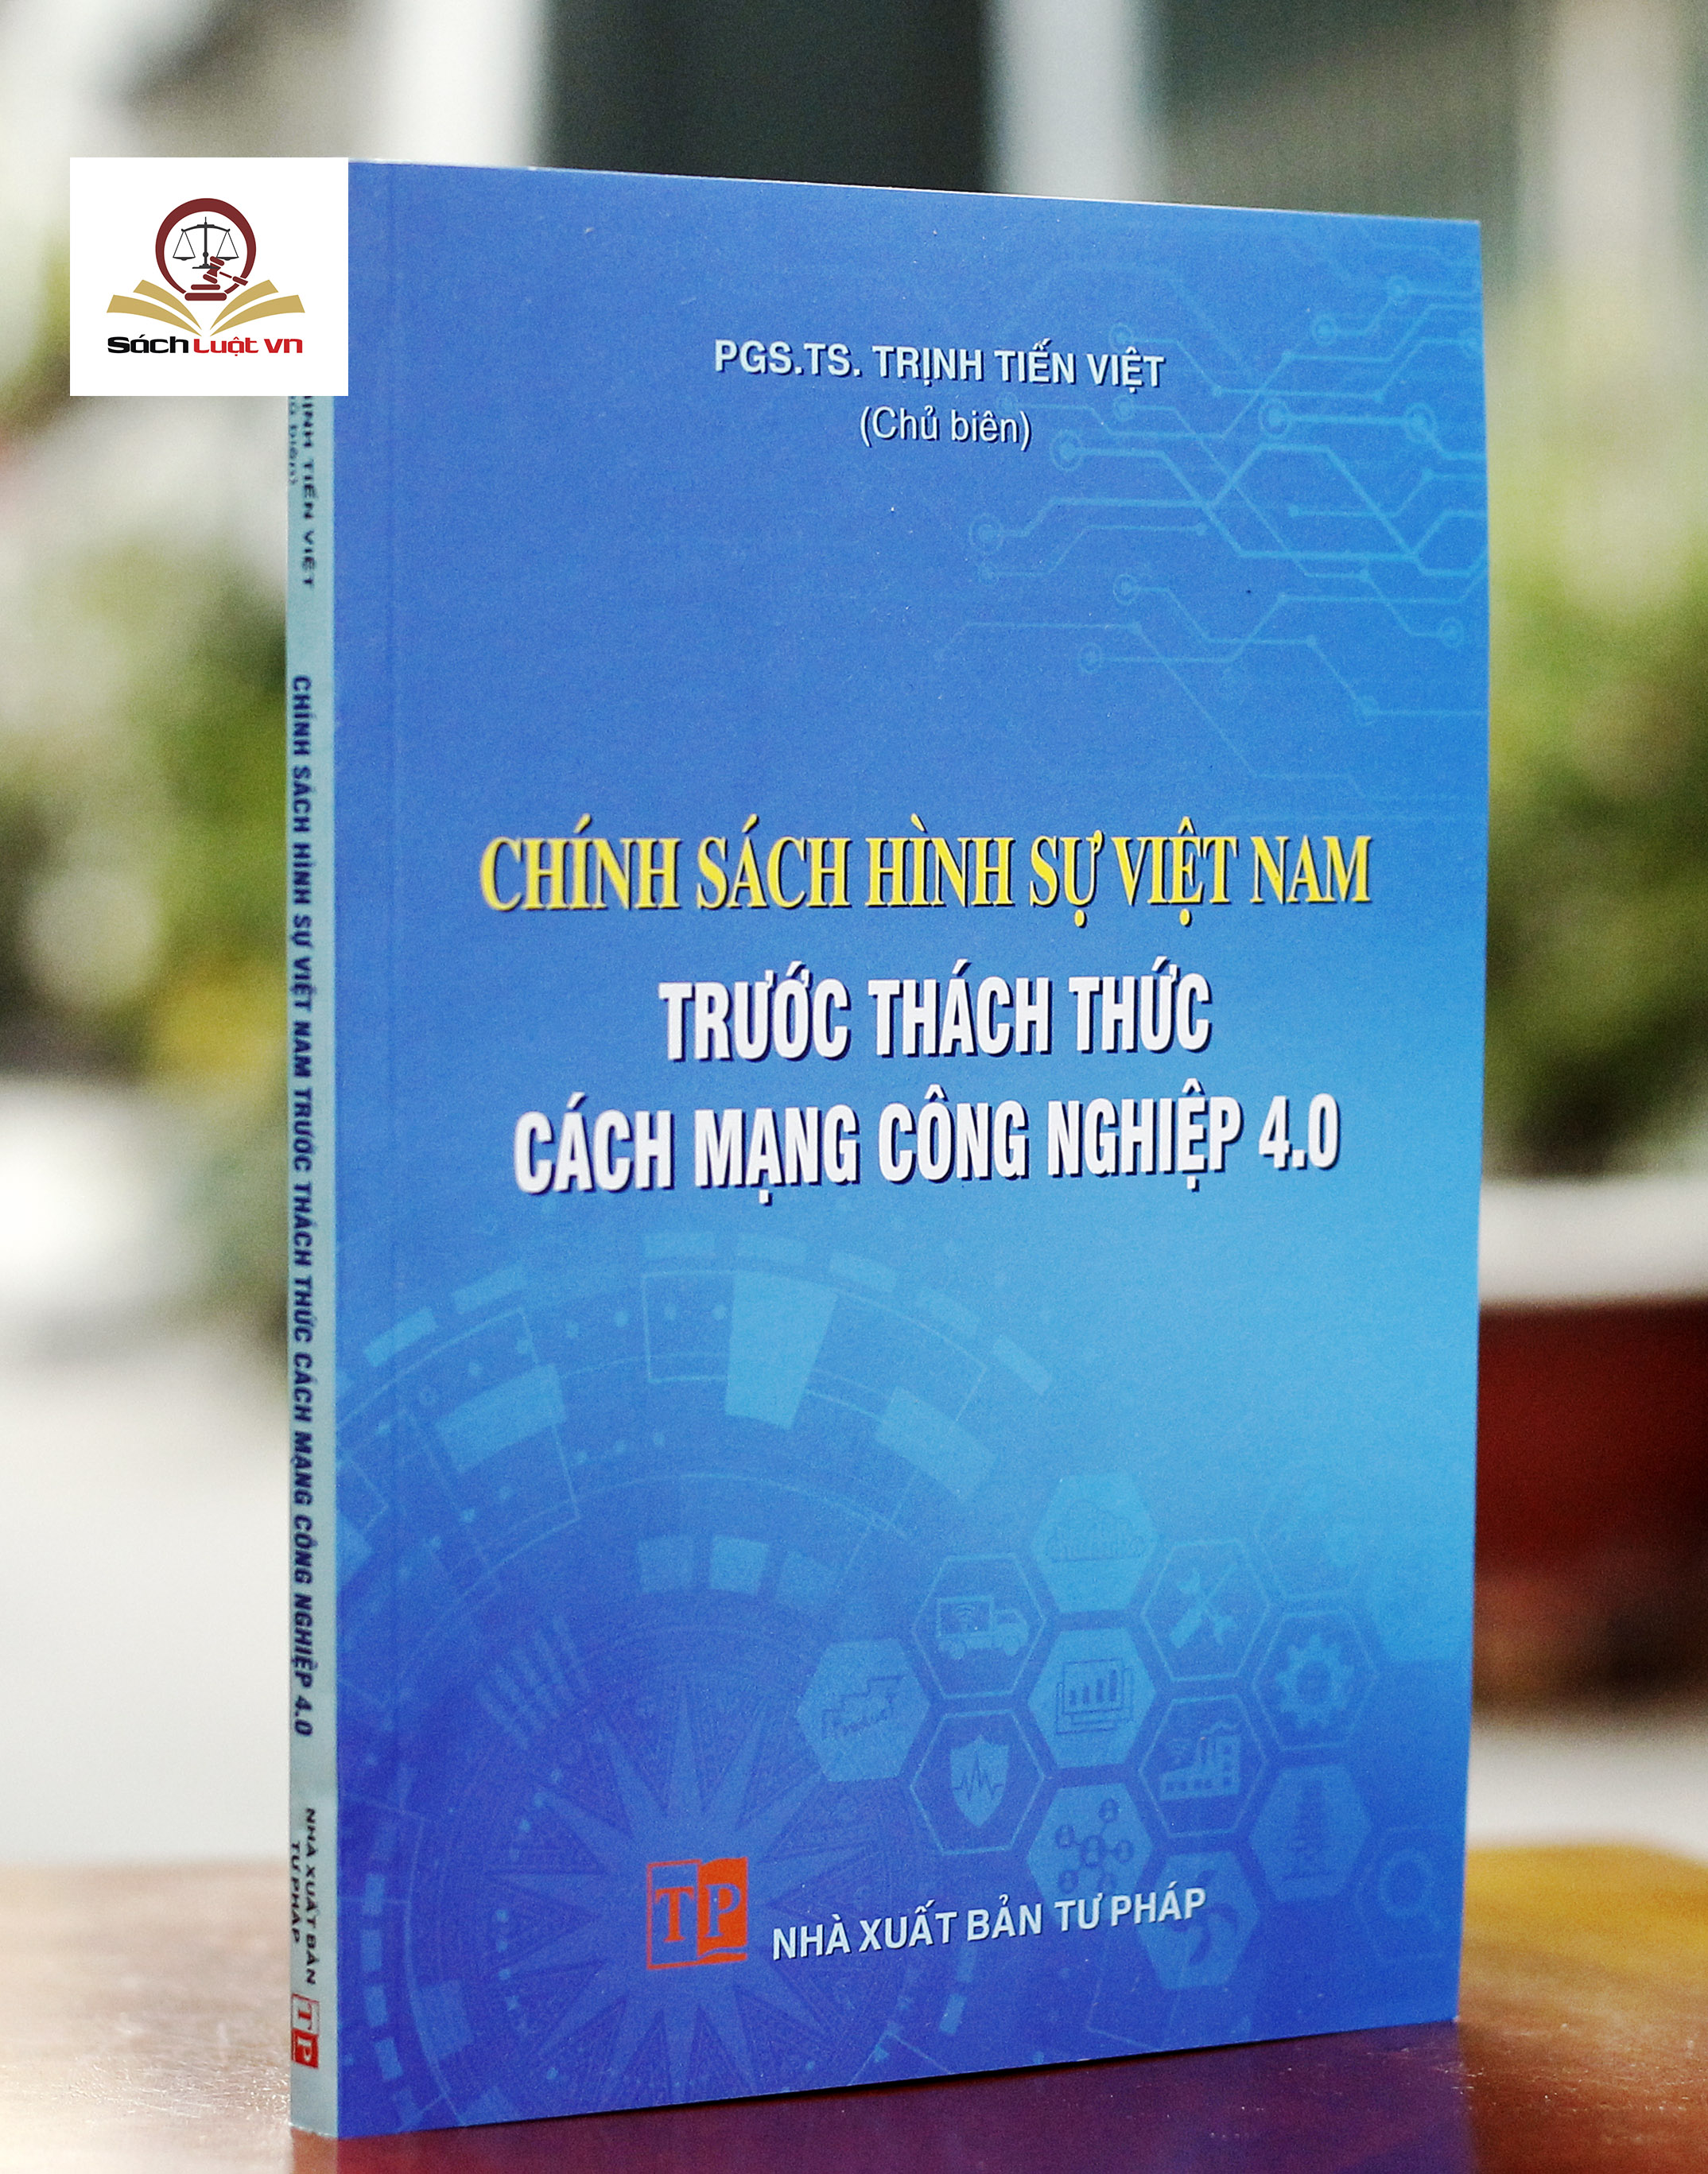 Chính sách hình sự Việt Nam trước thách thức Cách mạng công nghiệp 4.0